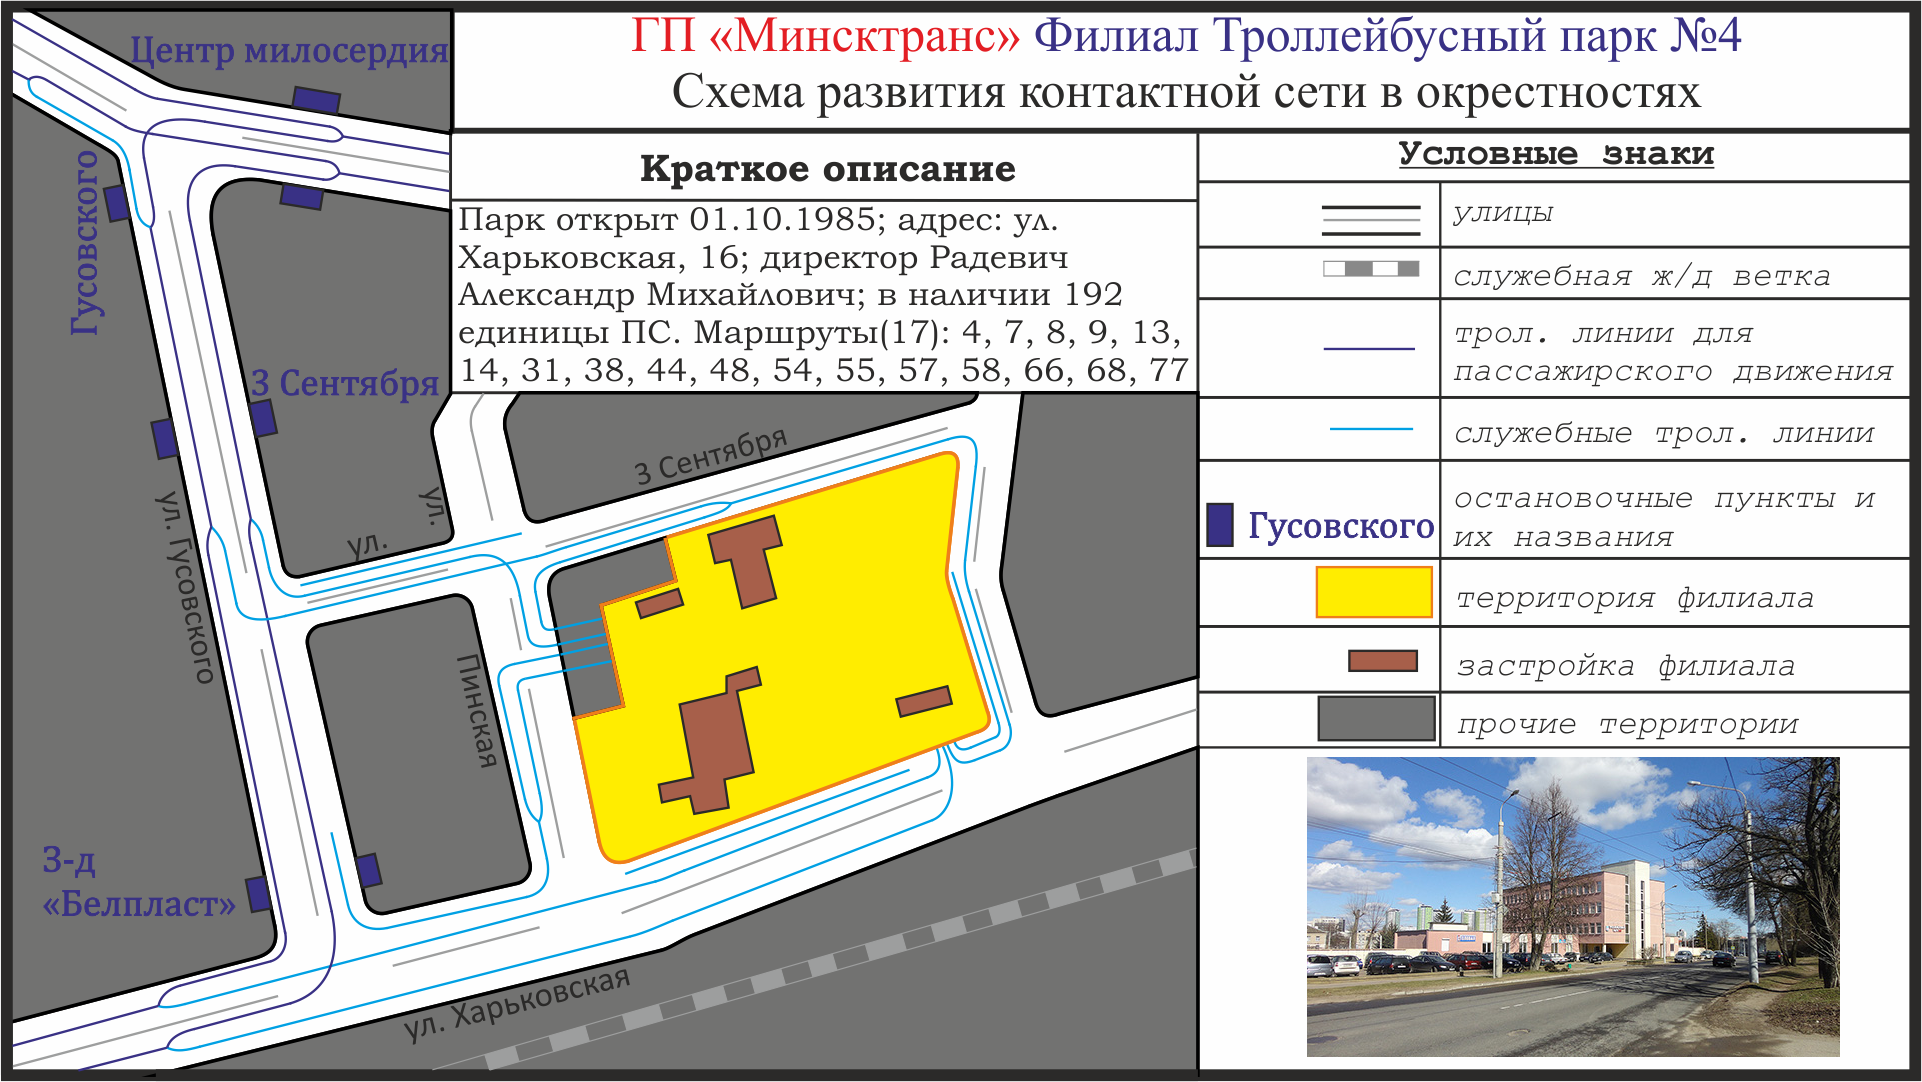 Minsk — Maps; Minsk — Trolleybus depot # 4